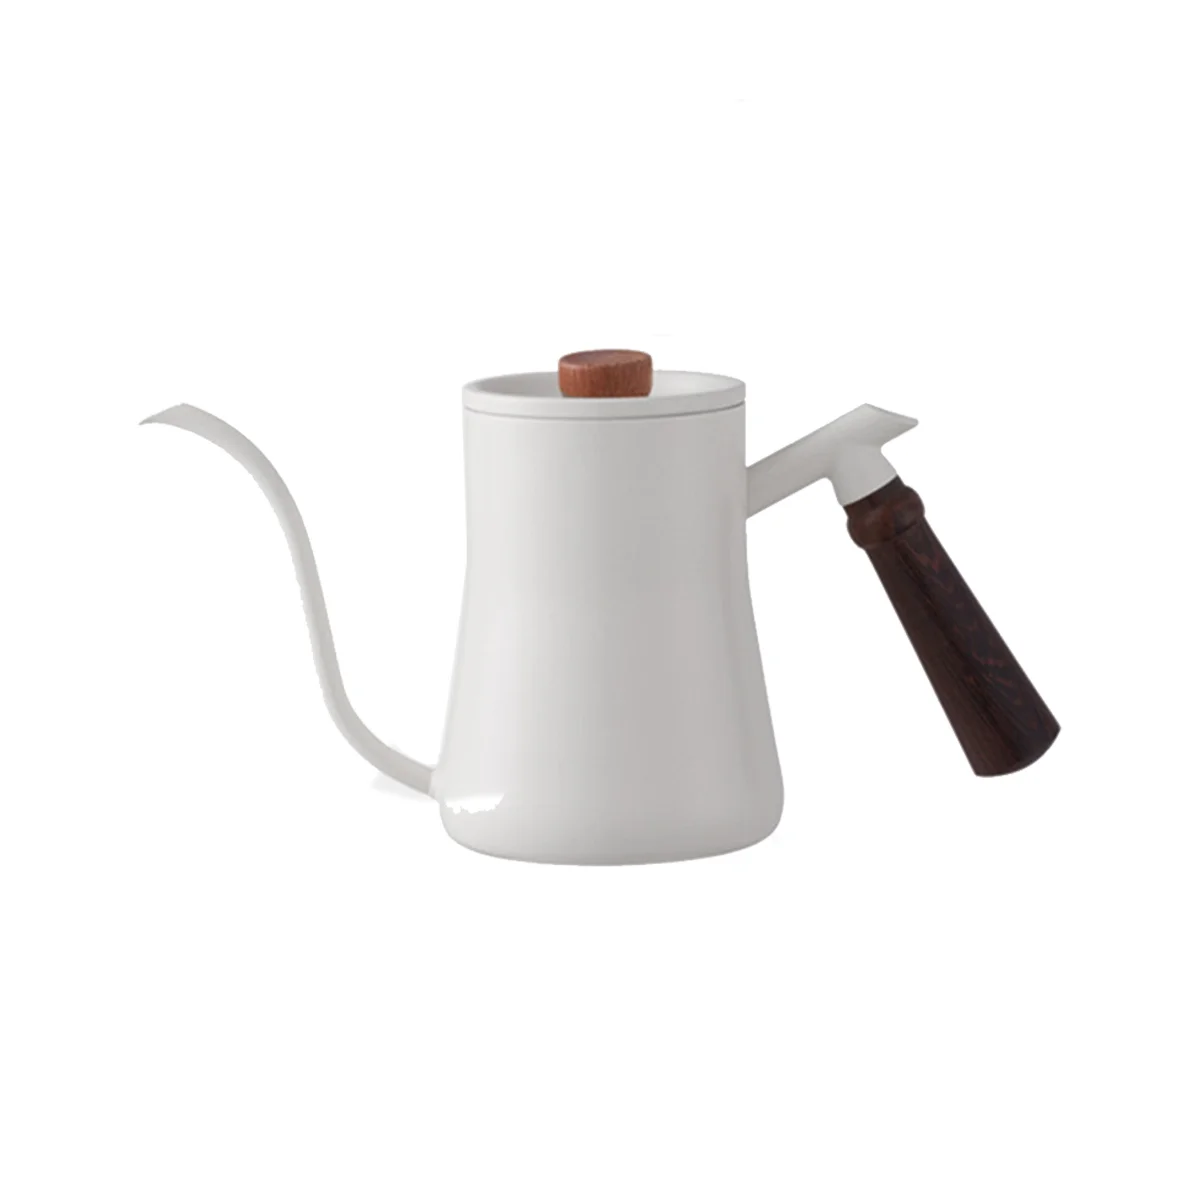 

Кофейник, кувшин для вспенивания молока, кувшин, носик чайника с гусиной шеей, чайник из нержавеющей стали для кофе, чая, молока, чайник 600 мл, белый